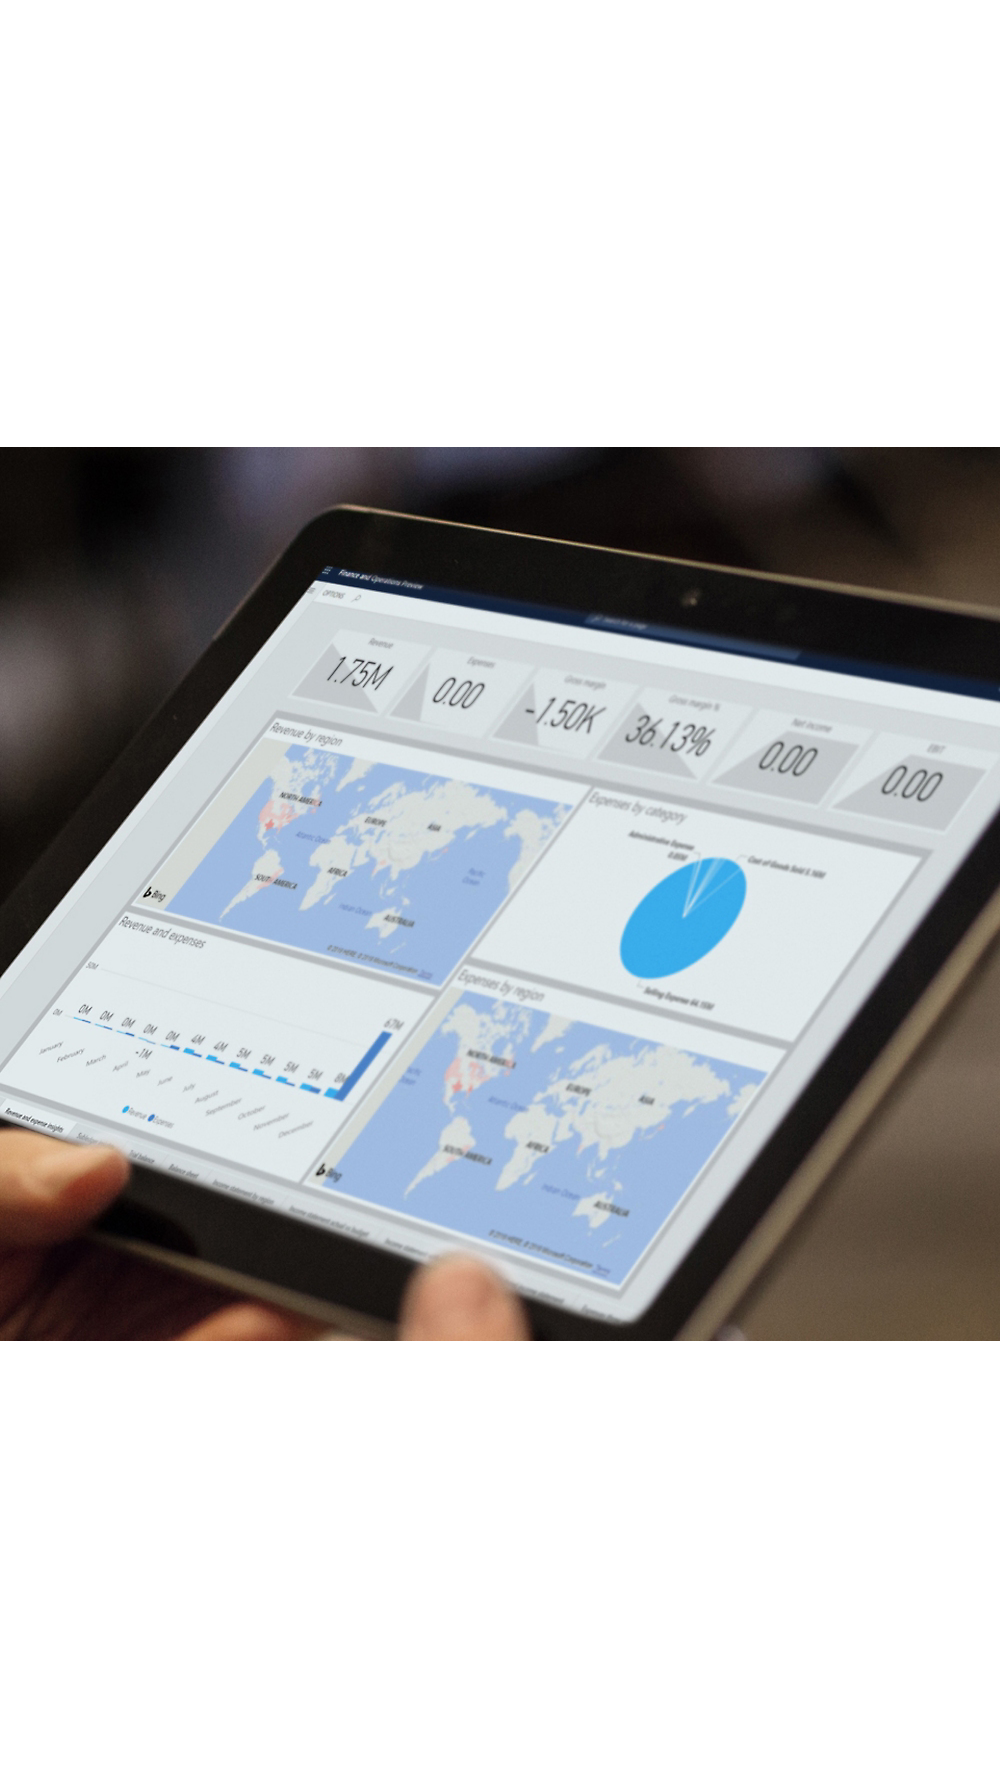 Personne tenant une tablette affichant des graphiques analytiques, notamment des cartes et des graphiques, reflétant les métriques de données globales.